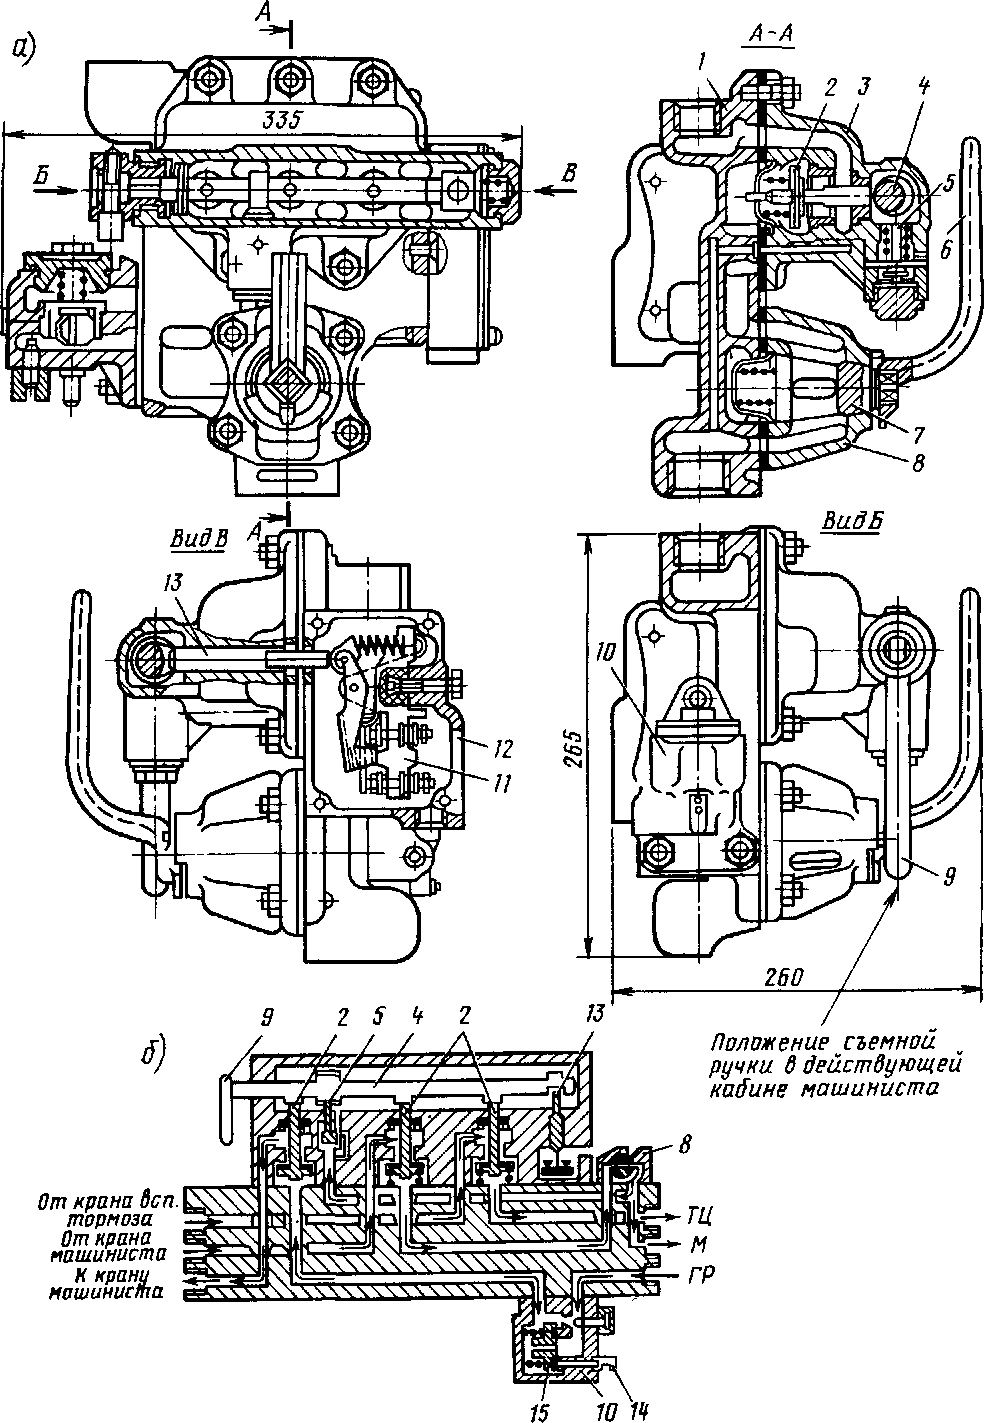 Блокировочное устройство тормозов (а) и его схема (б)